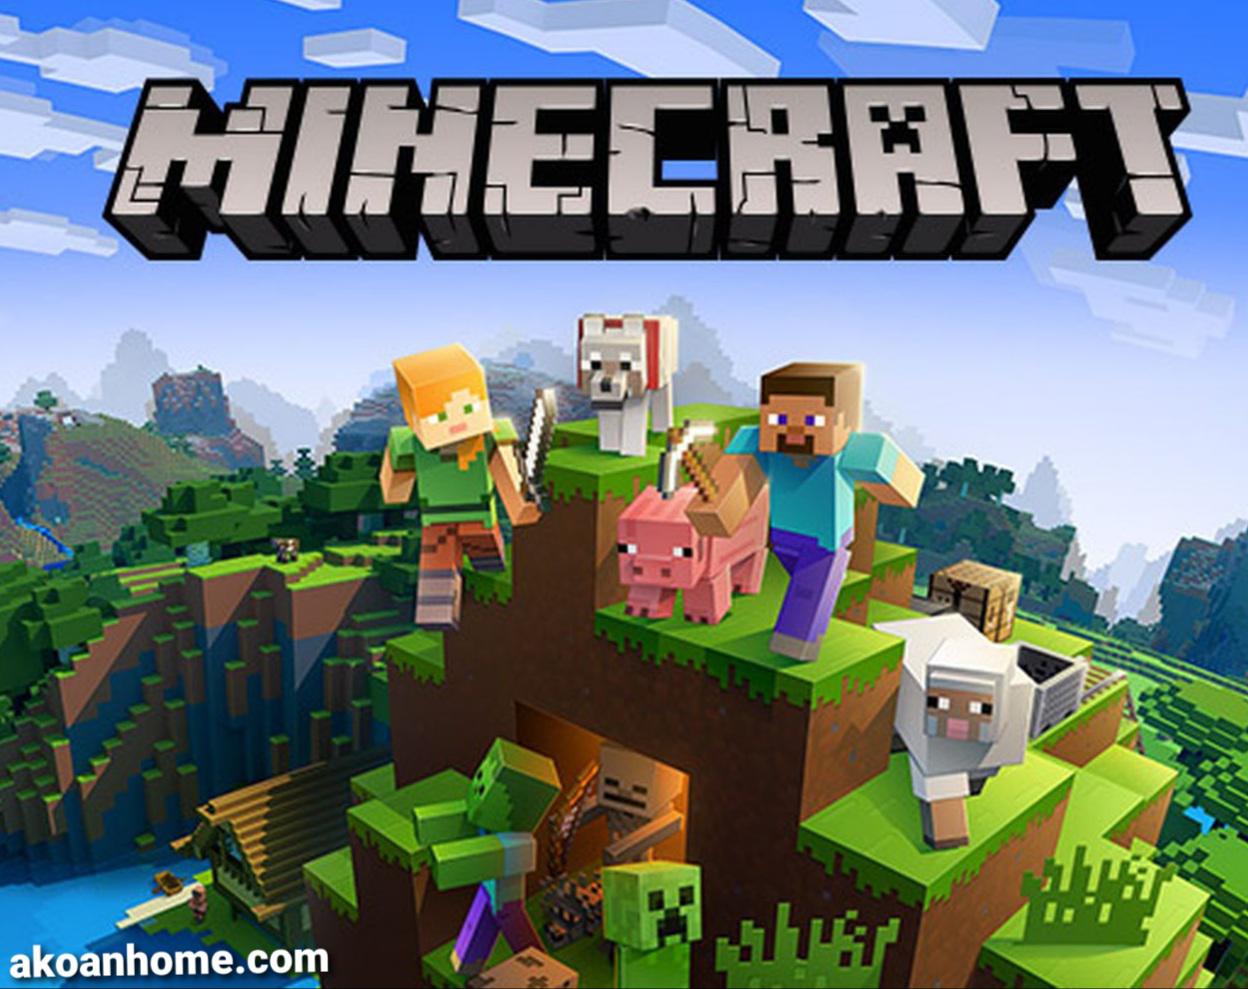 تحميل لعبة ماين كرافت 2021 للاندرويد Minecraft 1.17 احدث اصدار